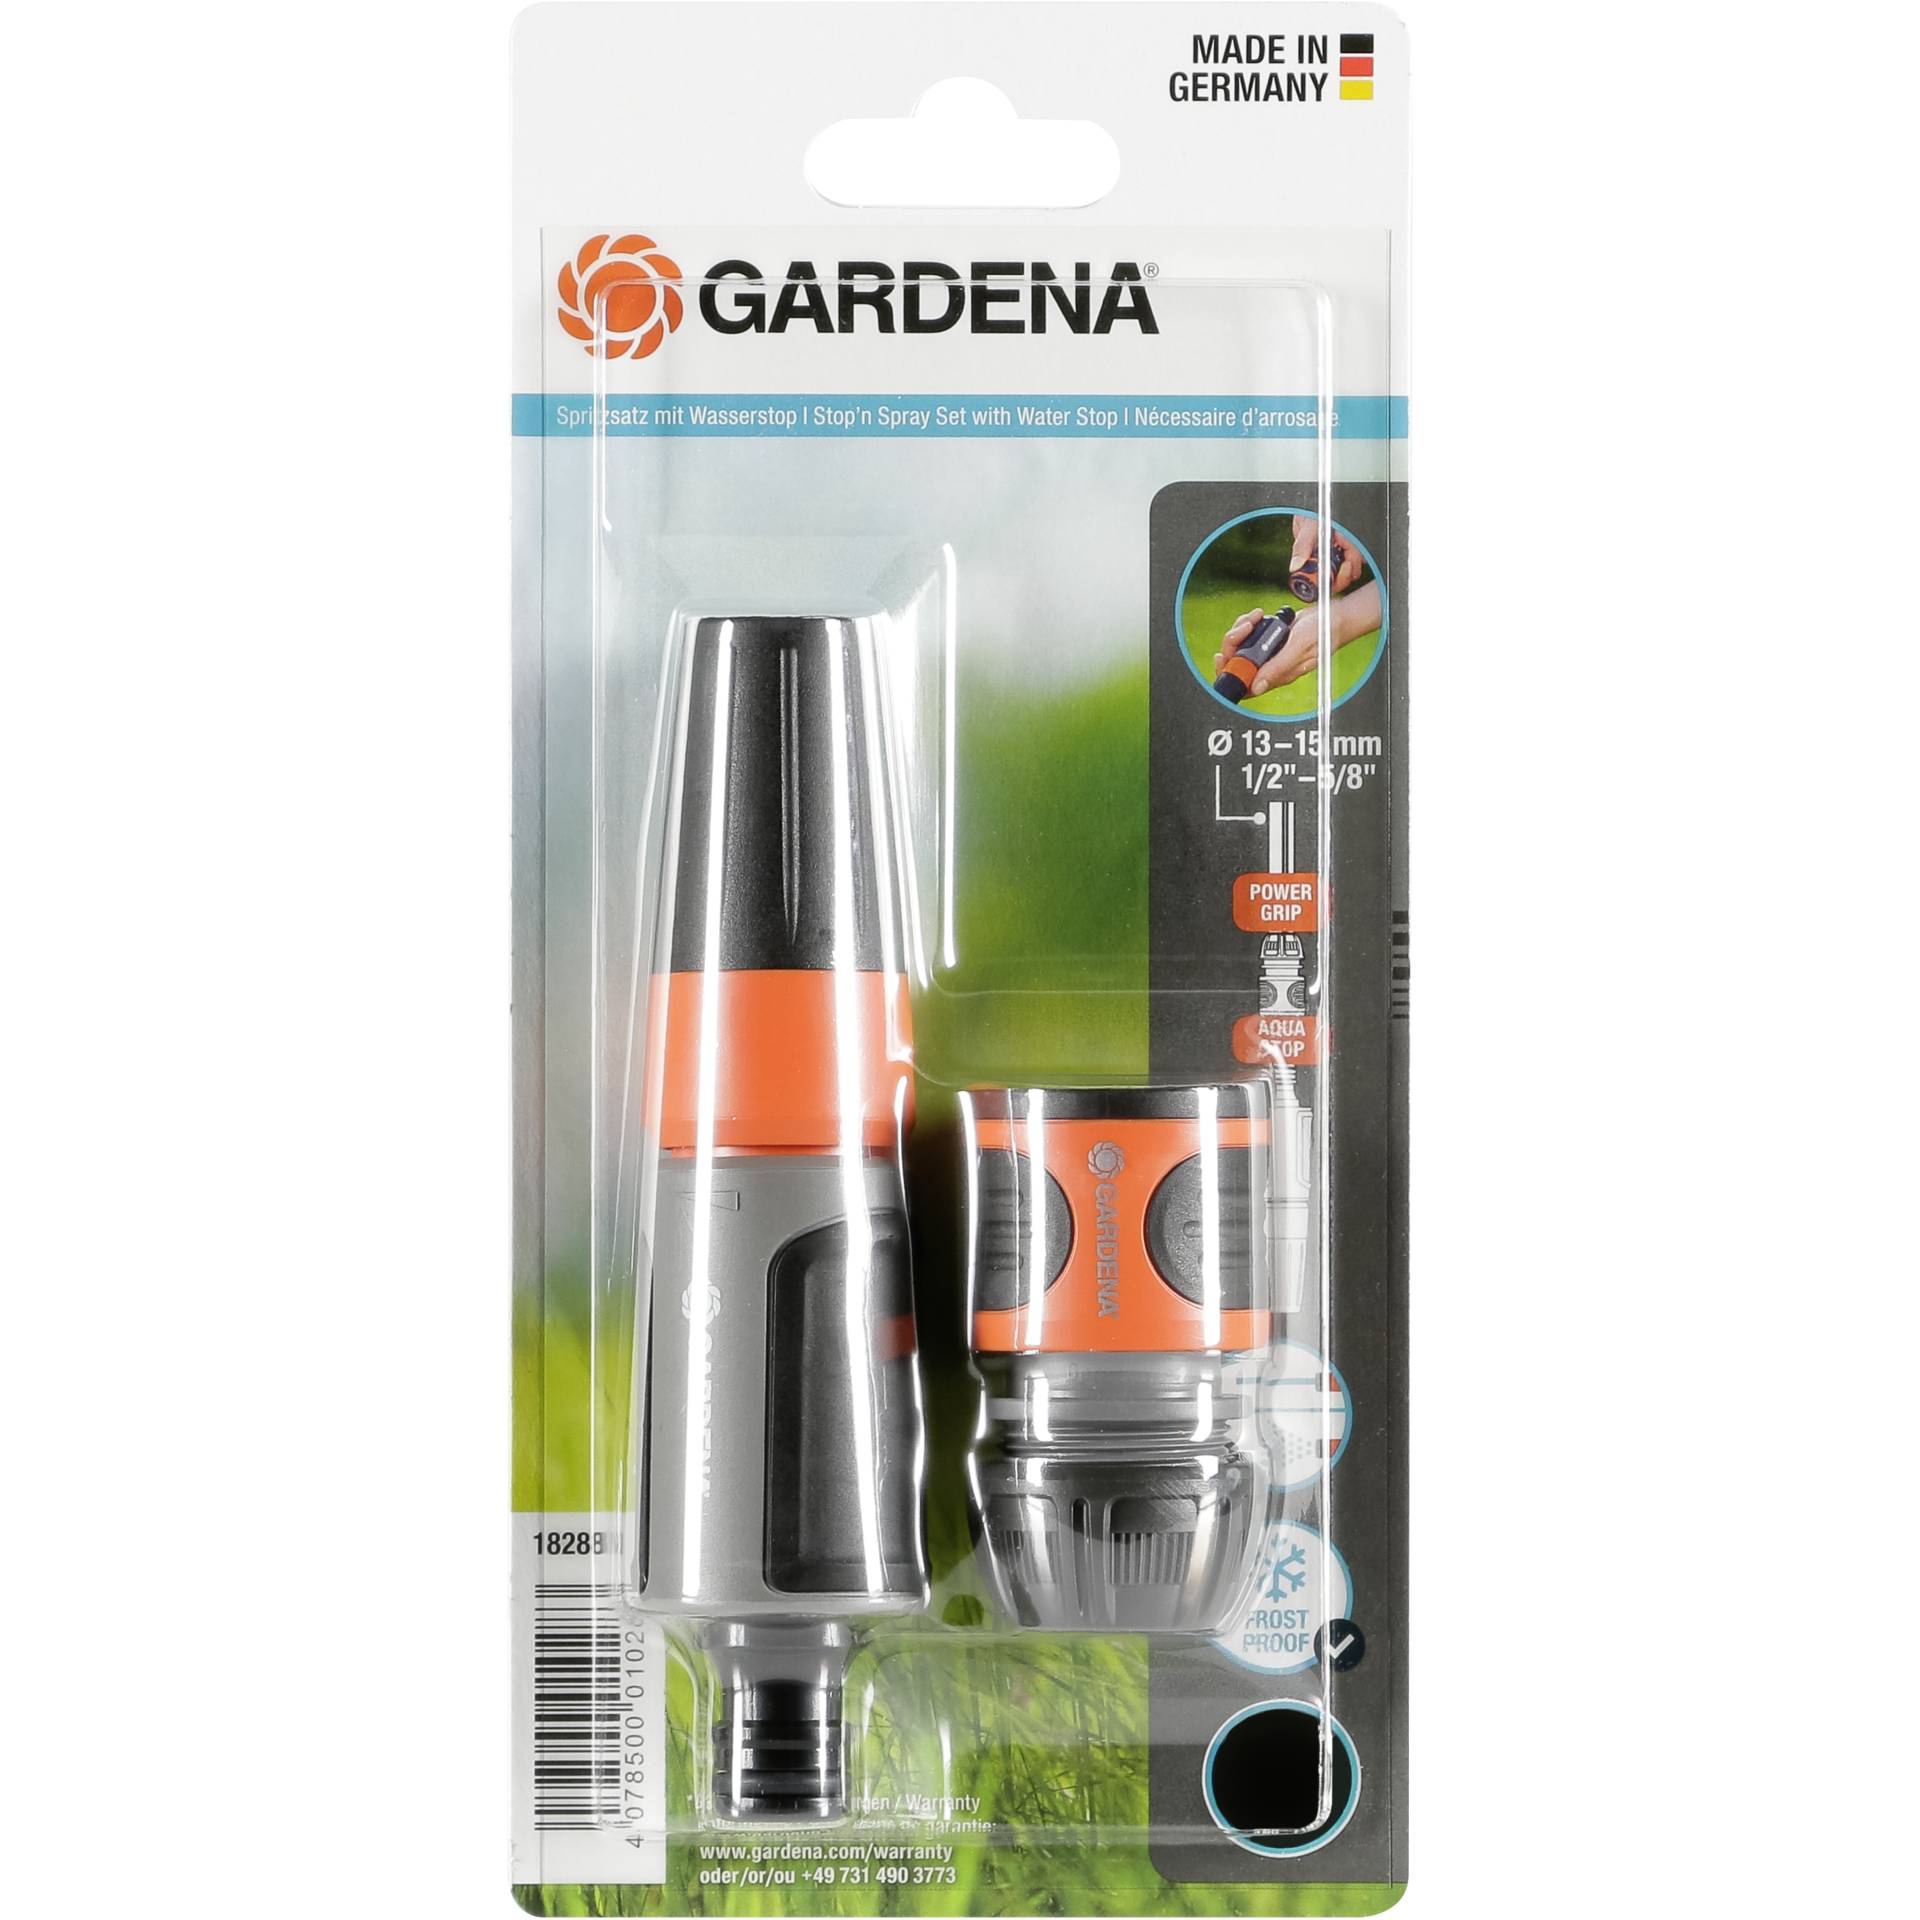 Gardena Stop 'n' Spray Set 13mm 1/2  1x 18213 + 18300